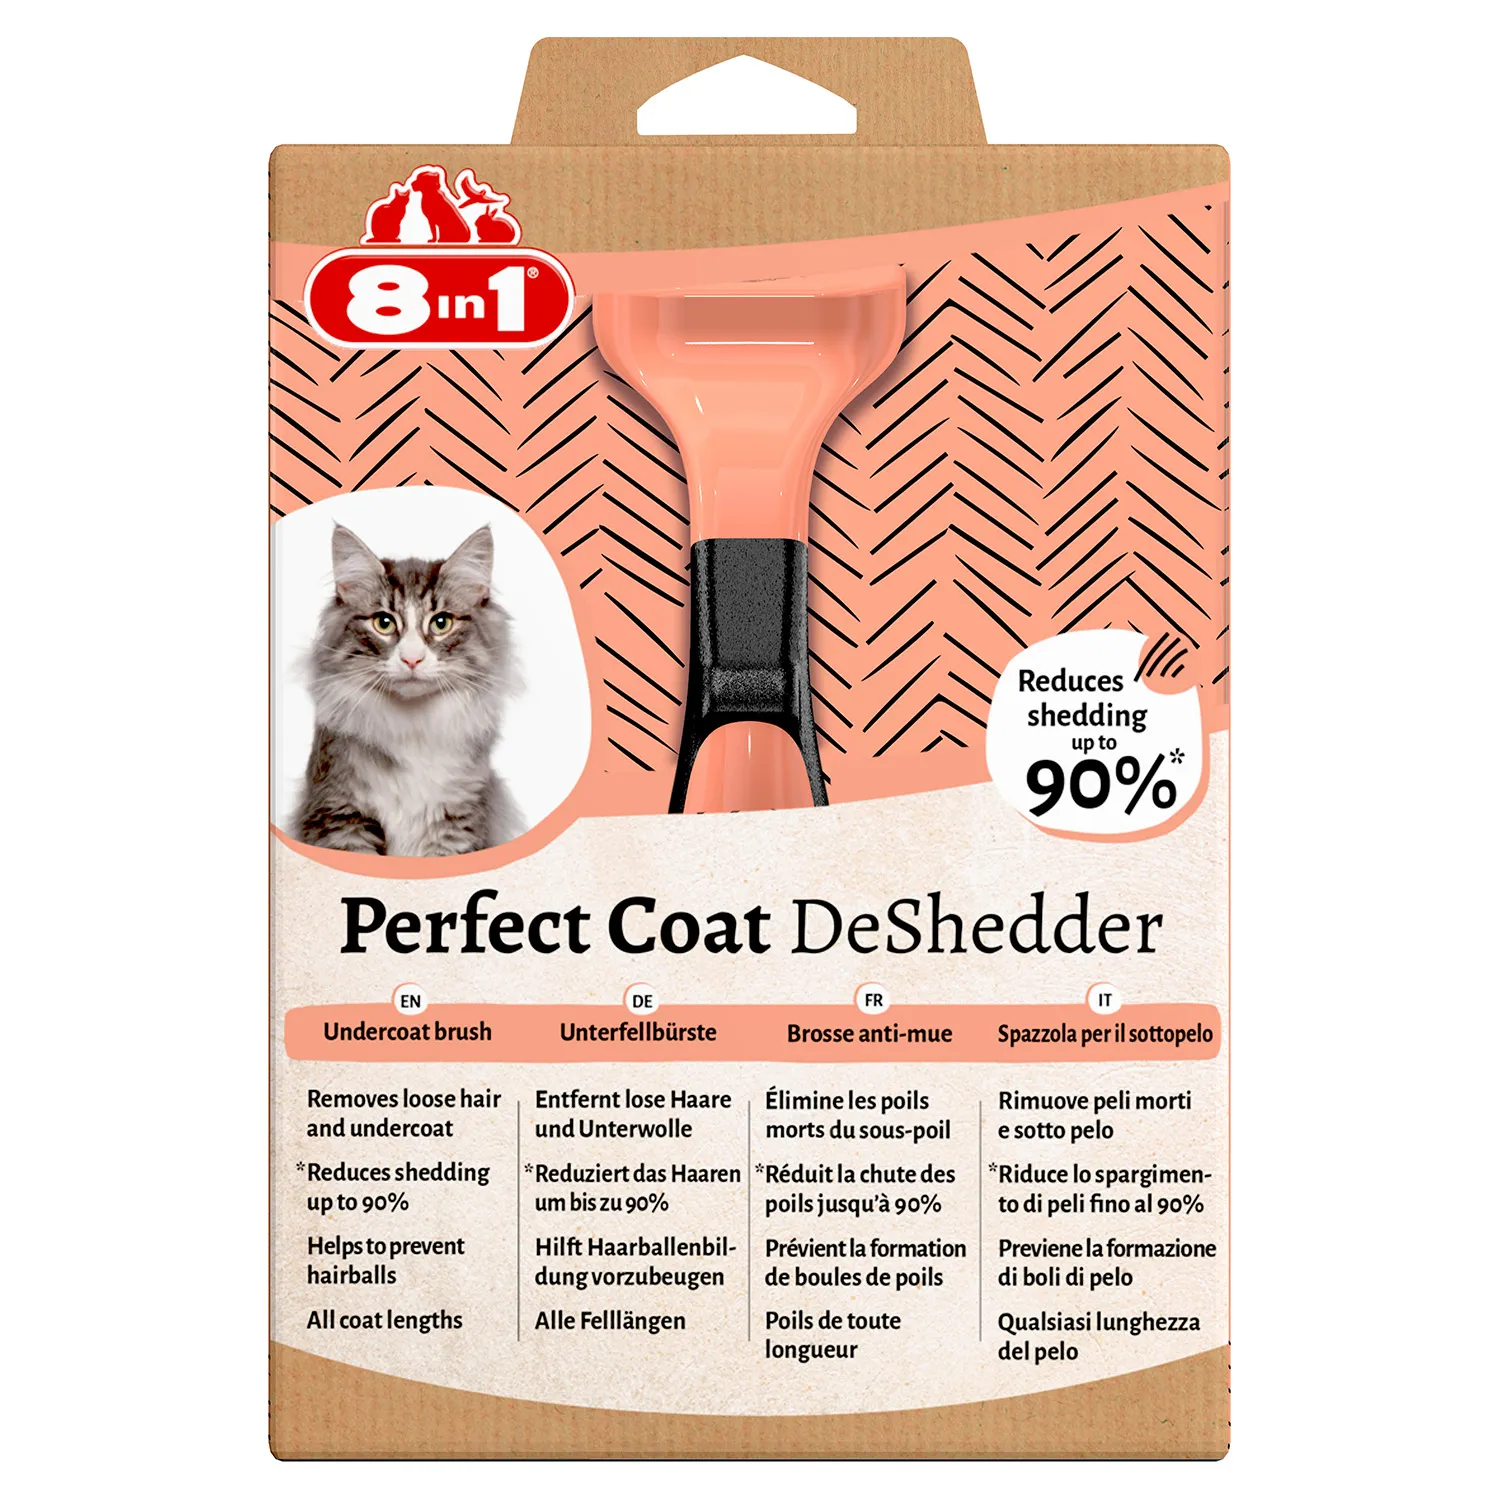 Дешеддер 8in1 Perfect Coat для кошек, размер S